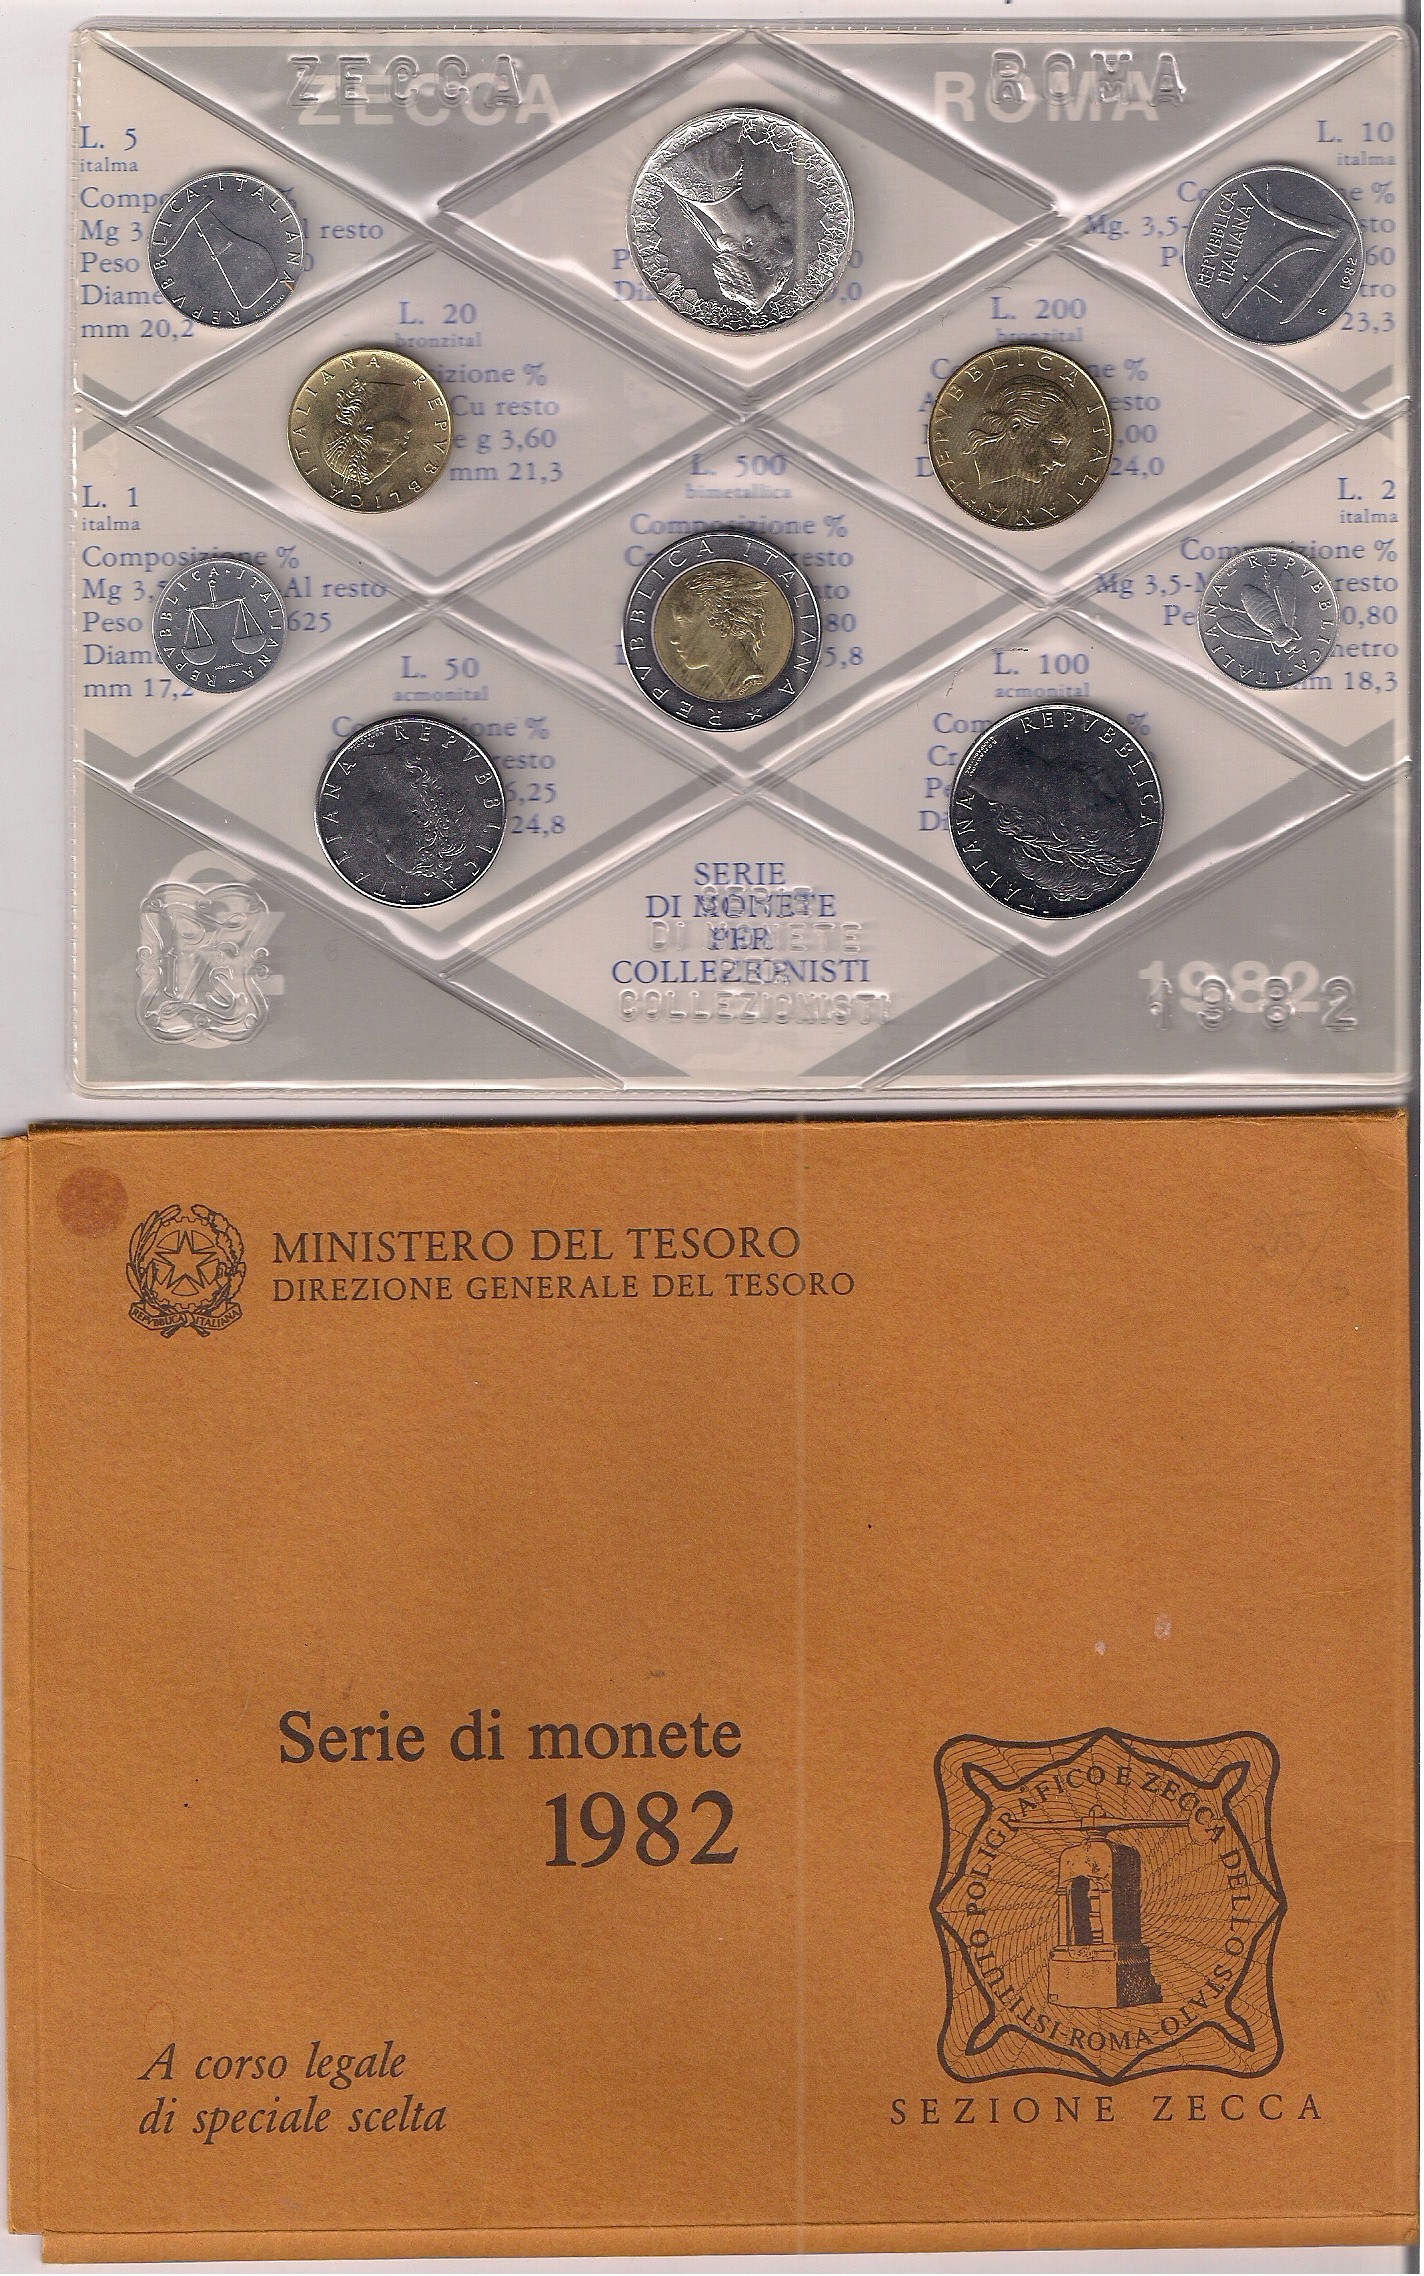 Serie completa di 10 monete confezionate dalla Zecca Italiana - lotto di 10 serie